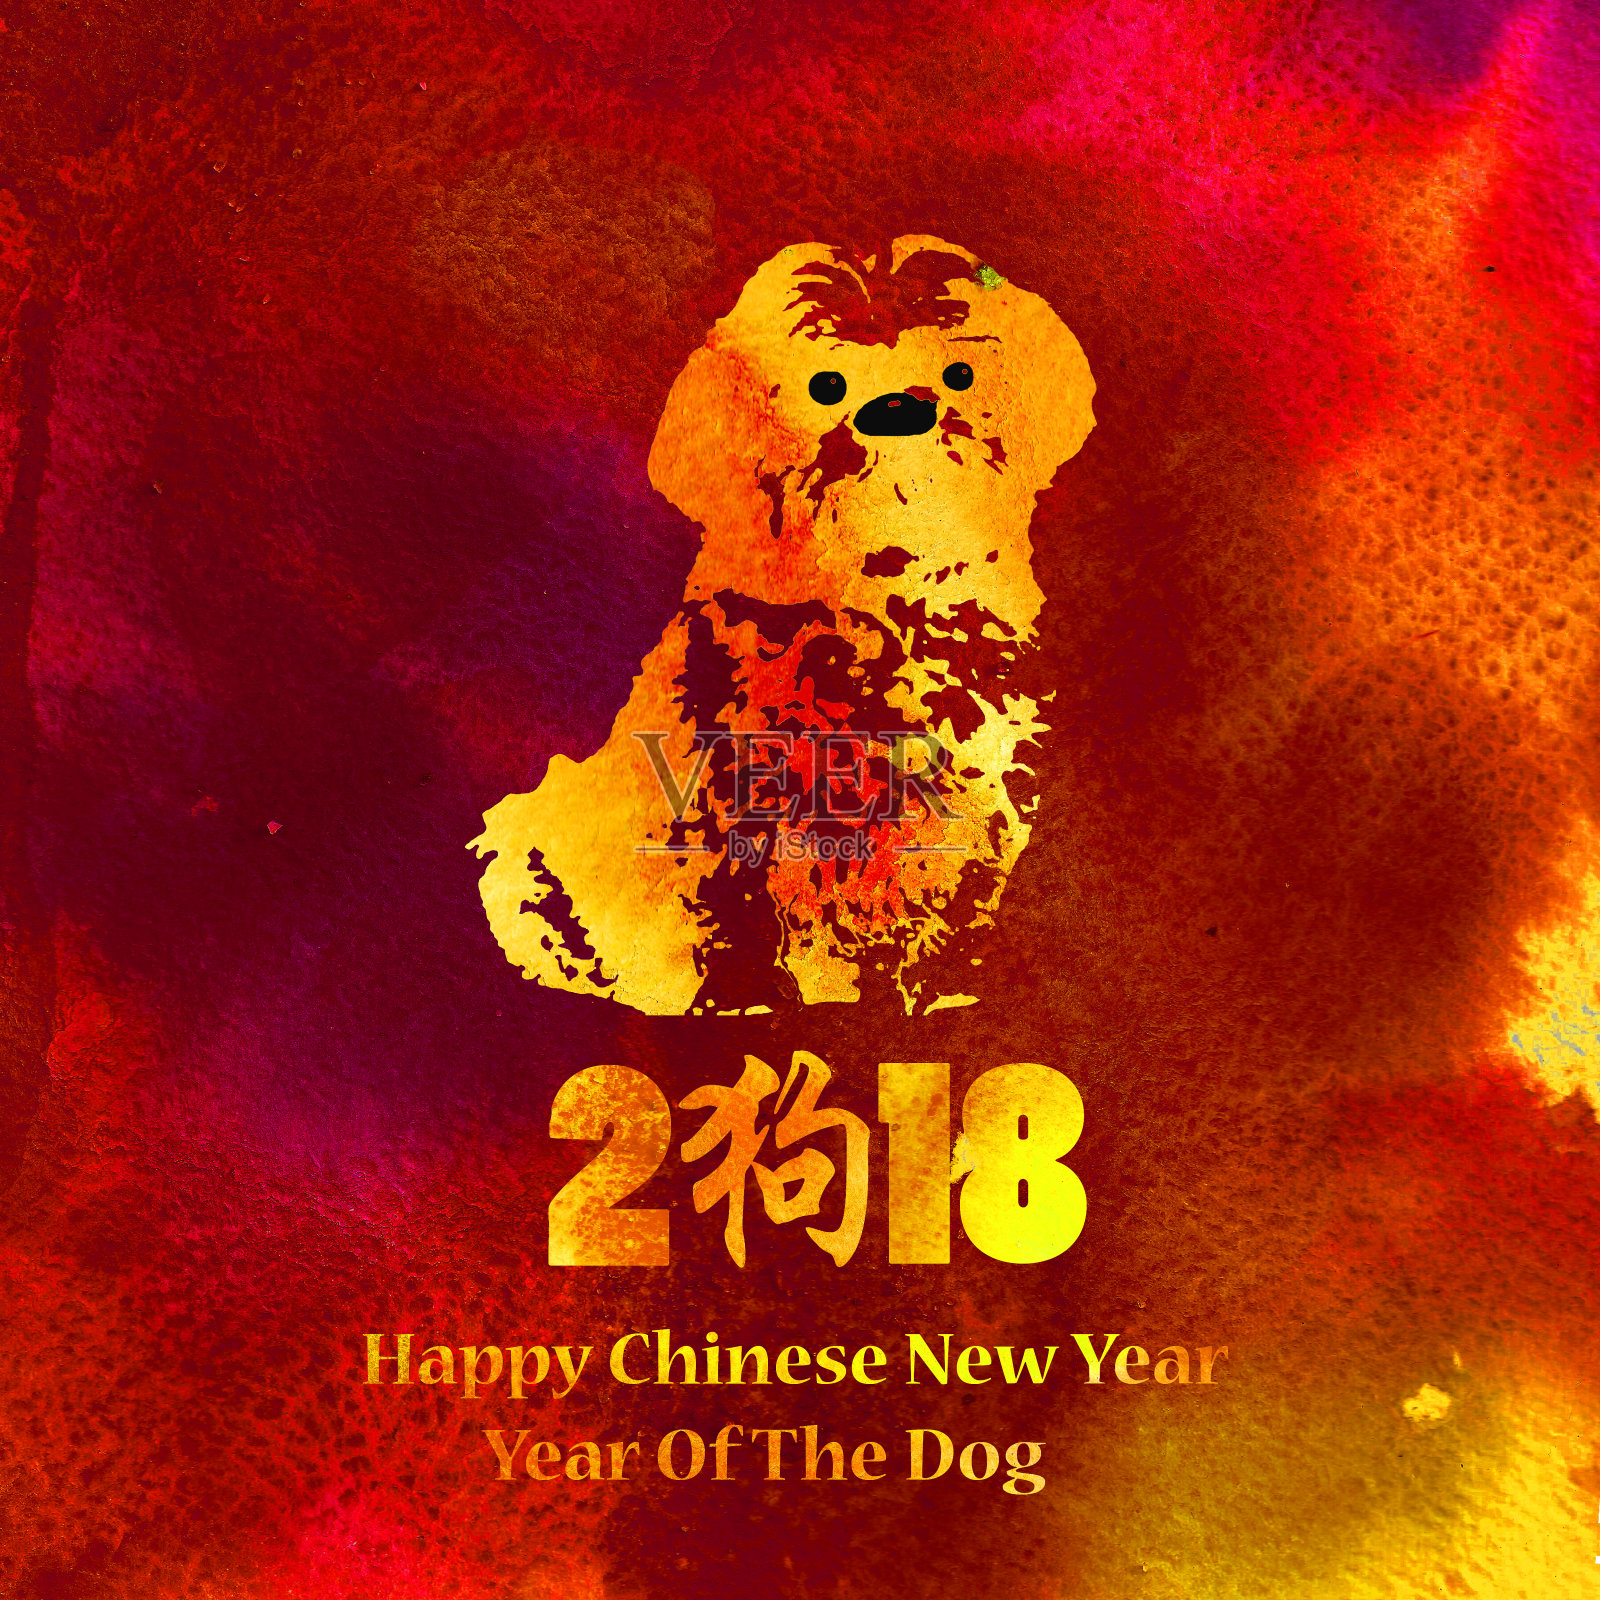 水彩金色纹理狗。祝你2018年春节快乐!中文的意思是狗。红色的背景。插画图片素材